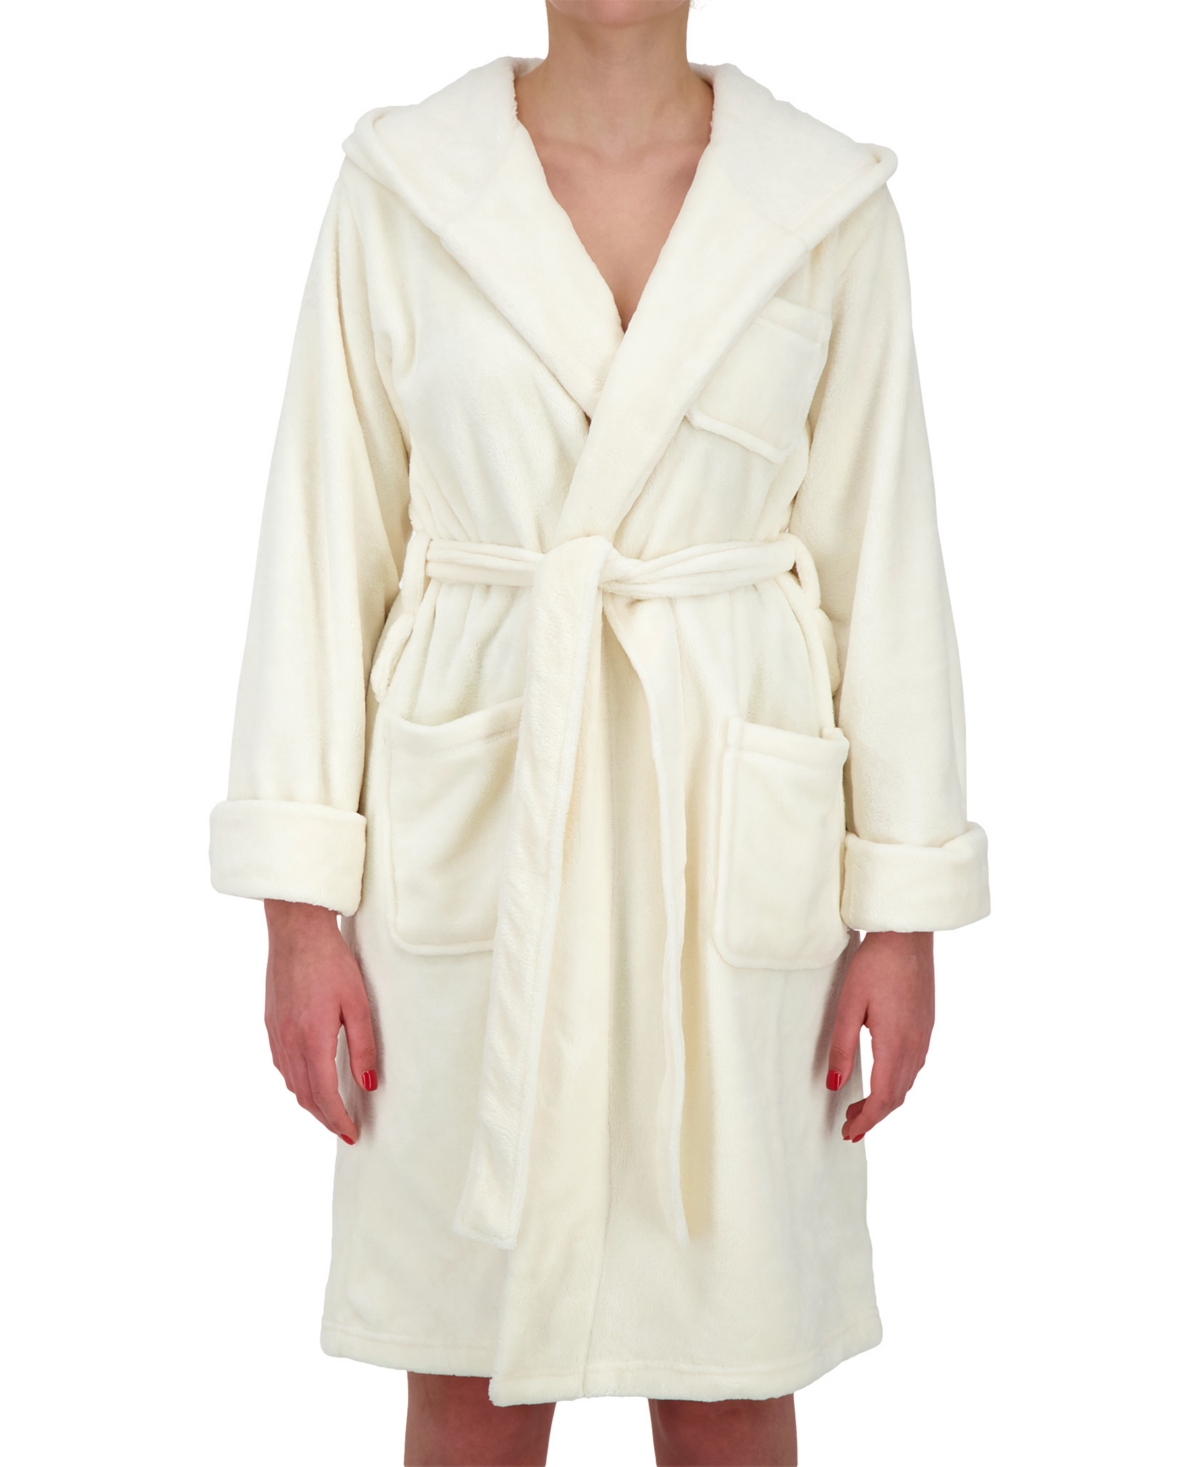 Heat Holders Women's Long-sleeve Spa Robe In White